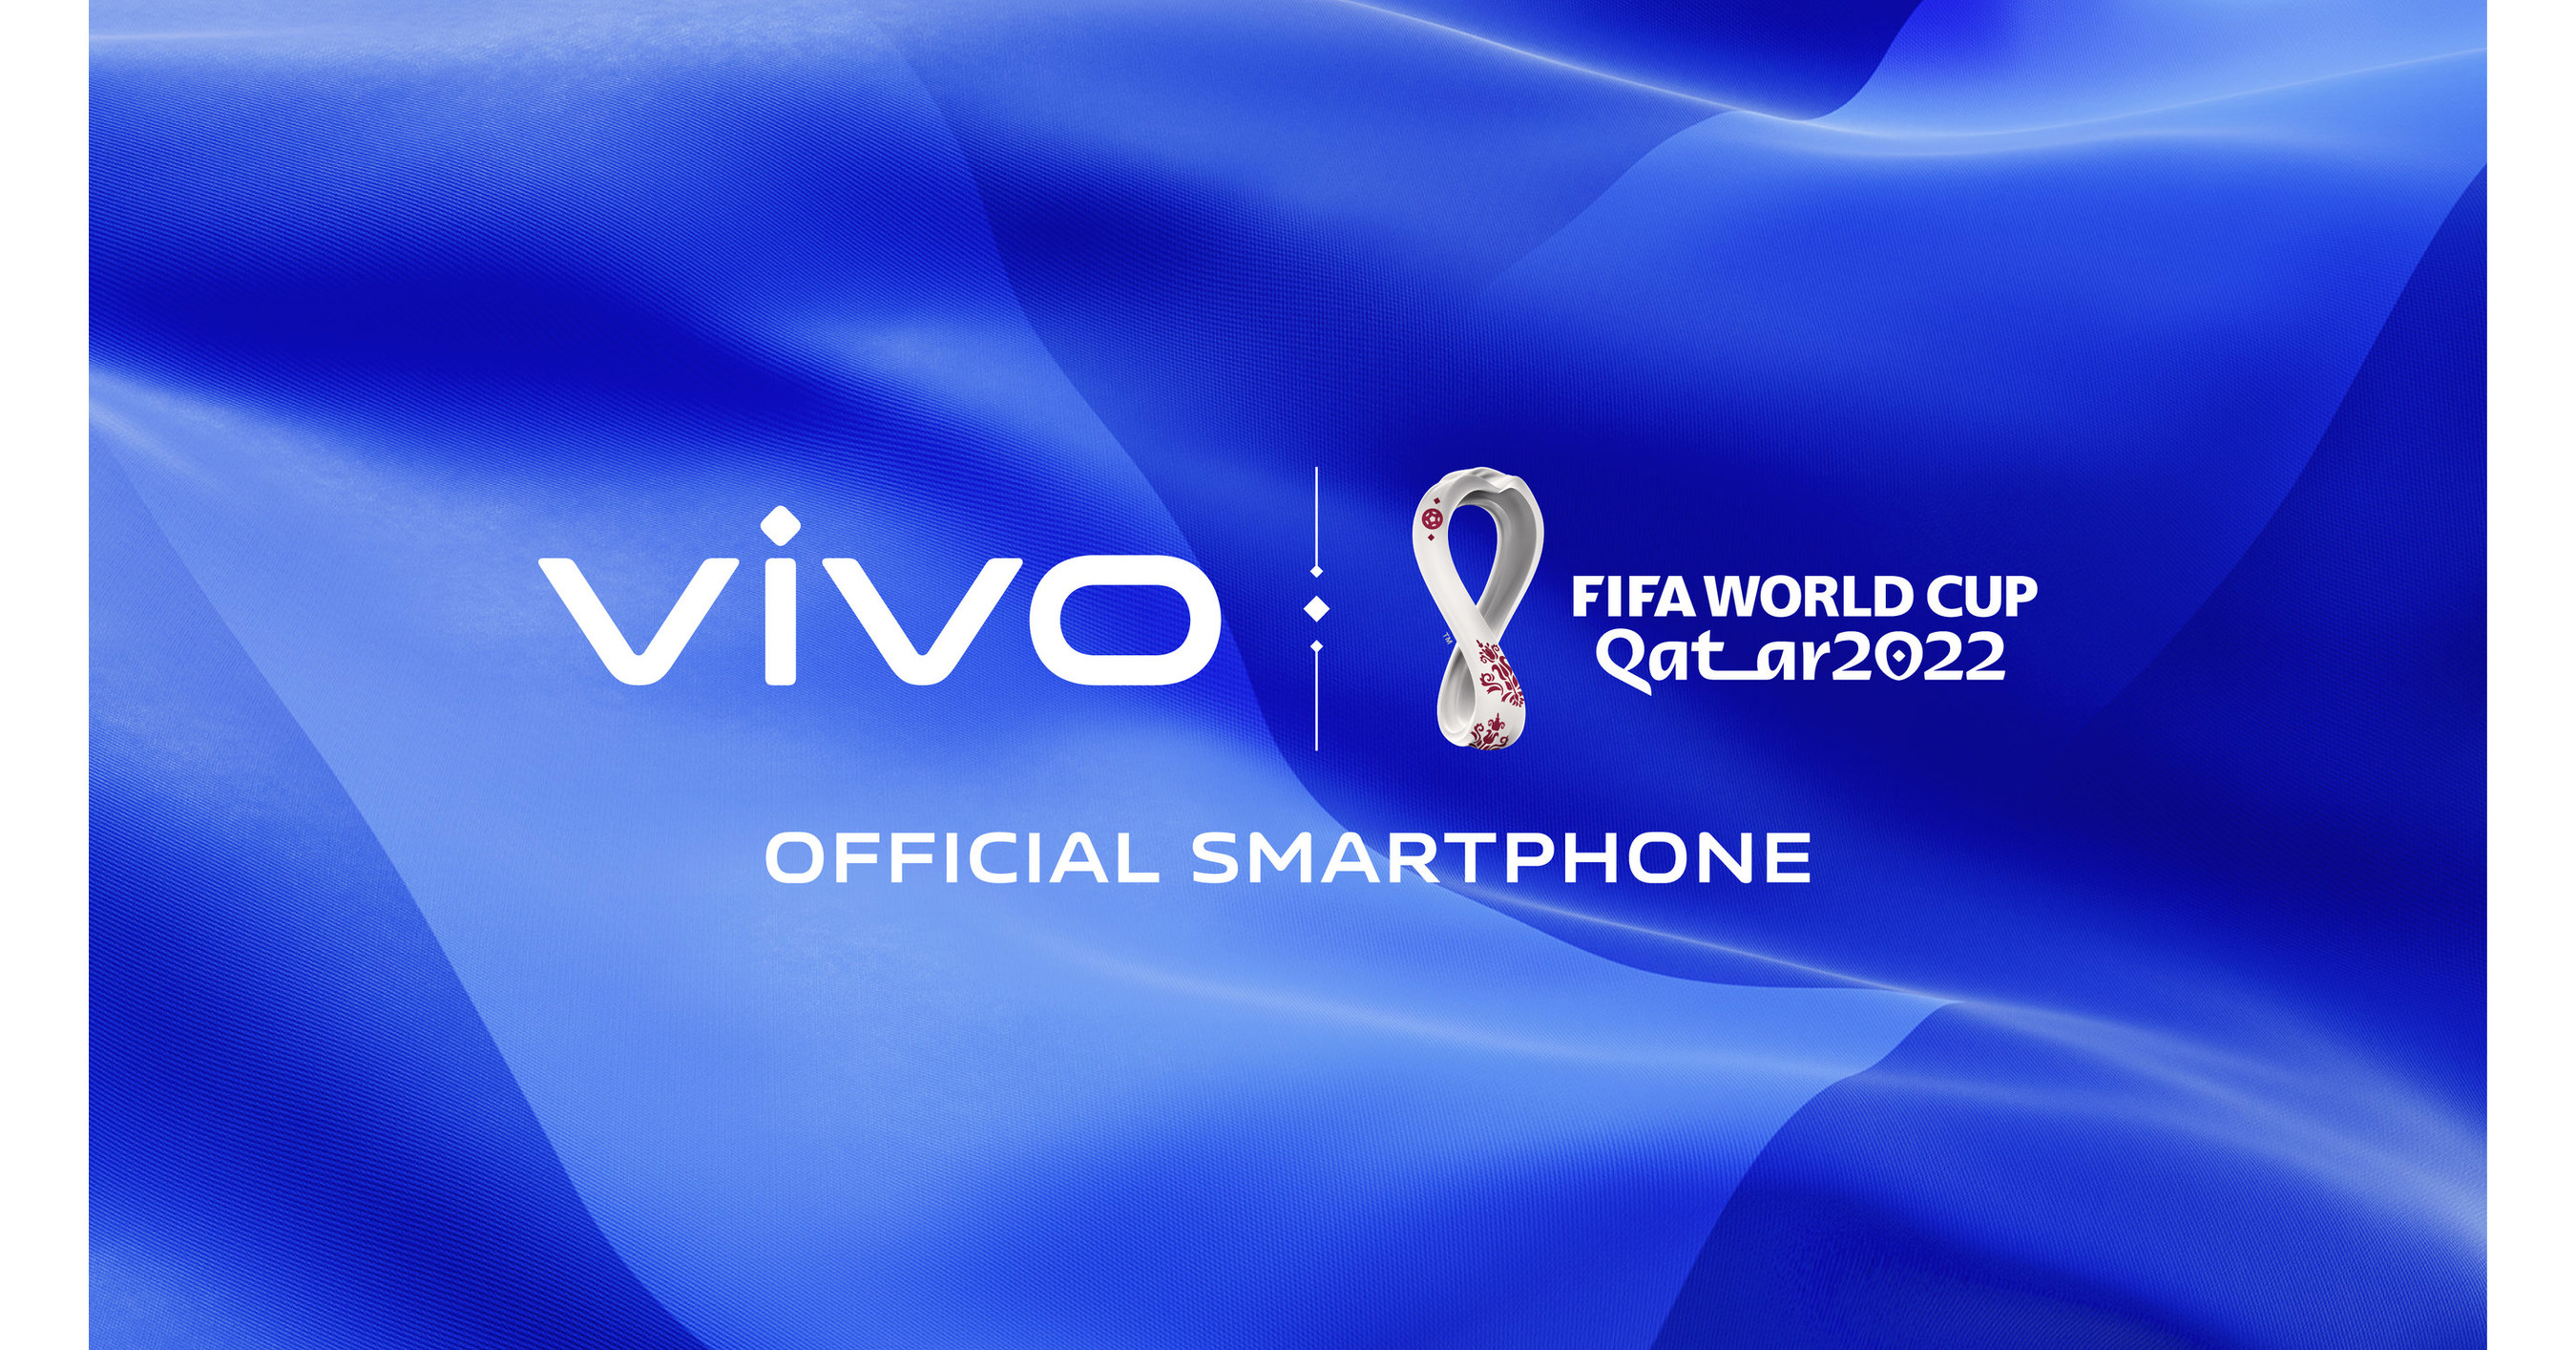 Vivo lança campanha 'Convocação de ofertas' com foco na Copa do Mundo